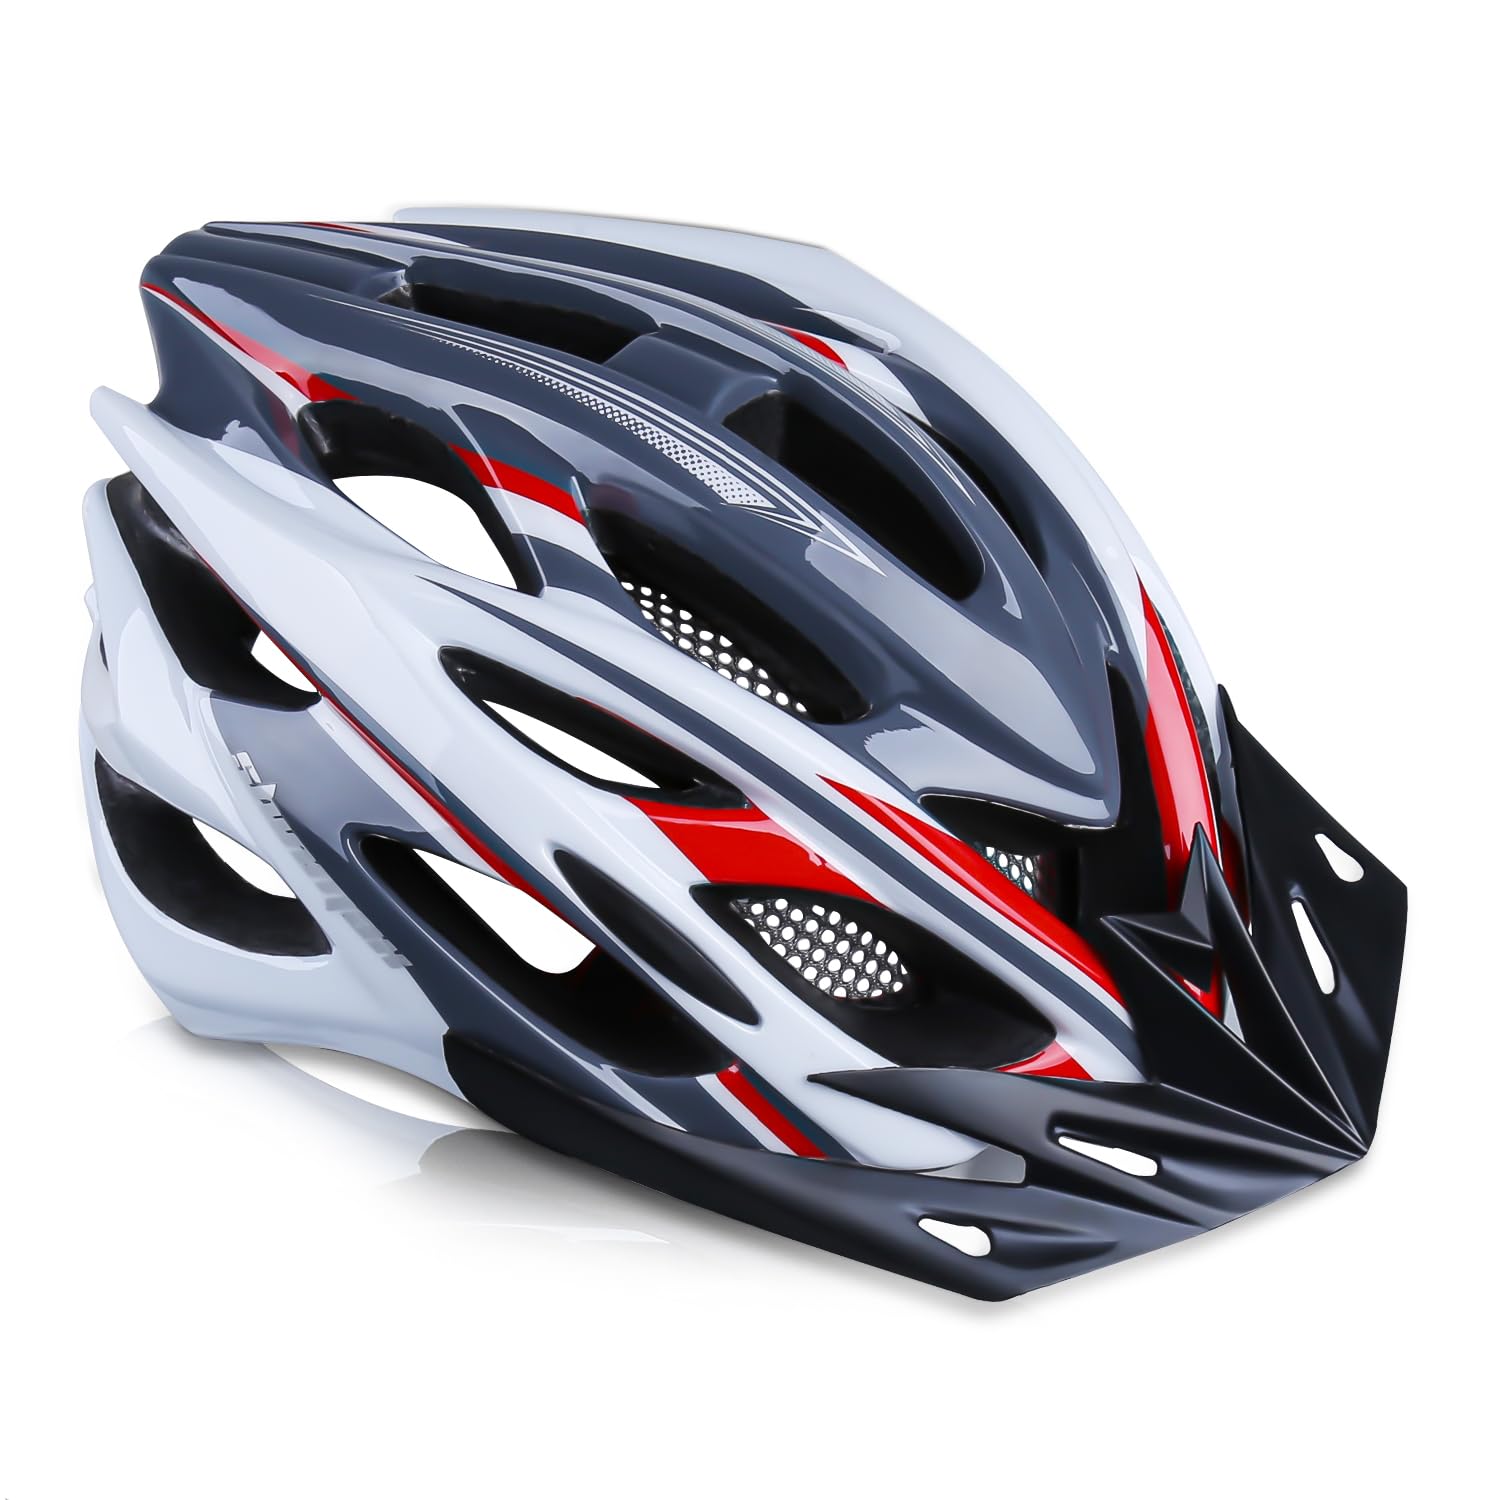 Shinmax 自転車 ヘルメット 大人 CPSC認定済み LEDライト付 ロードバイクヘルメット 57cm~62cm 軽量 虫対策 サンバイザー 着脱可能 男性 女性 サイクリング 山地 ロード オフロード MTB 通気性 高剛性 調整可能 M/L (グレー・レッド・シロ)